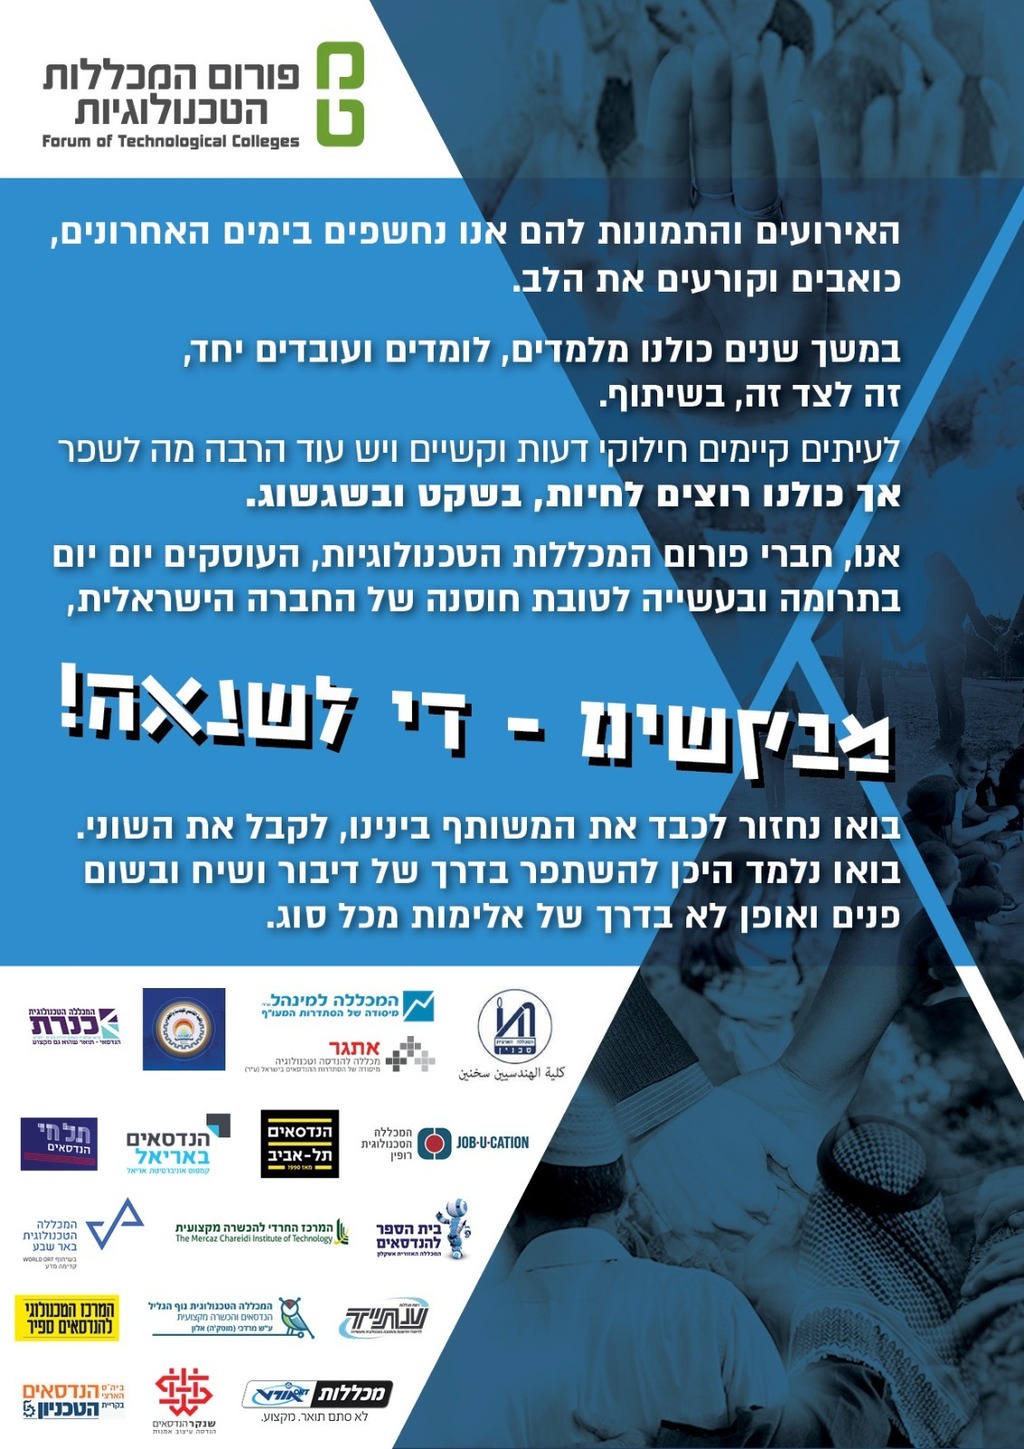  יהודים וערבים מ המכללות הטכנולוגיות בישראל קוראים בכרזה מיוחדת להפסקת השנאה